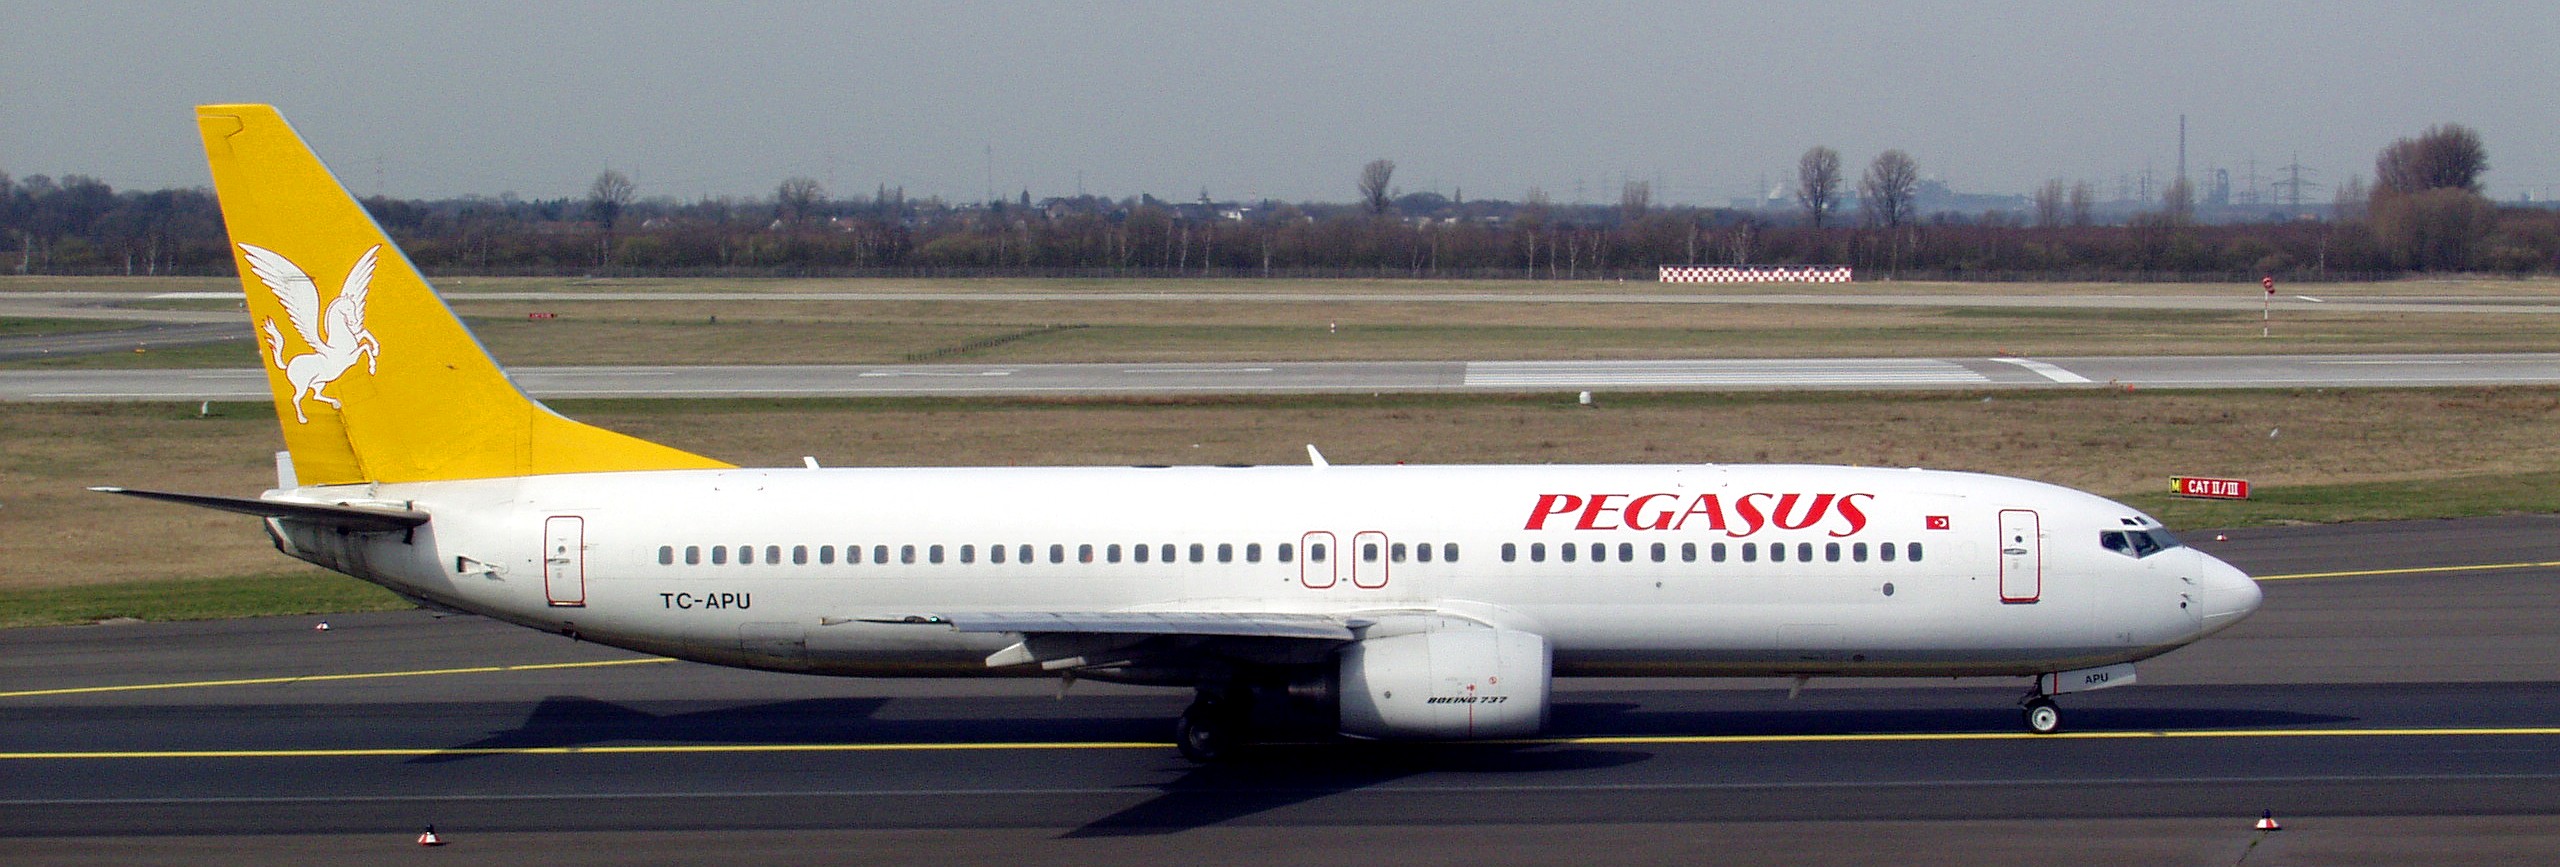 Aerei Pegasus Airlines (Pegasus Airlines). ufficiale sayt.2